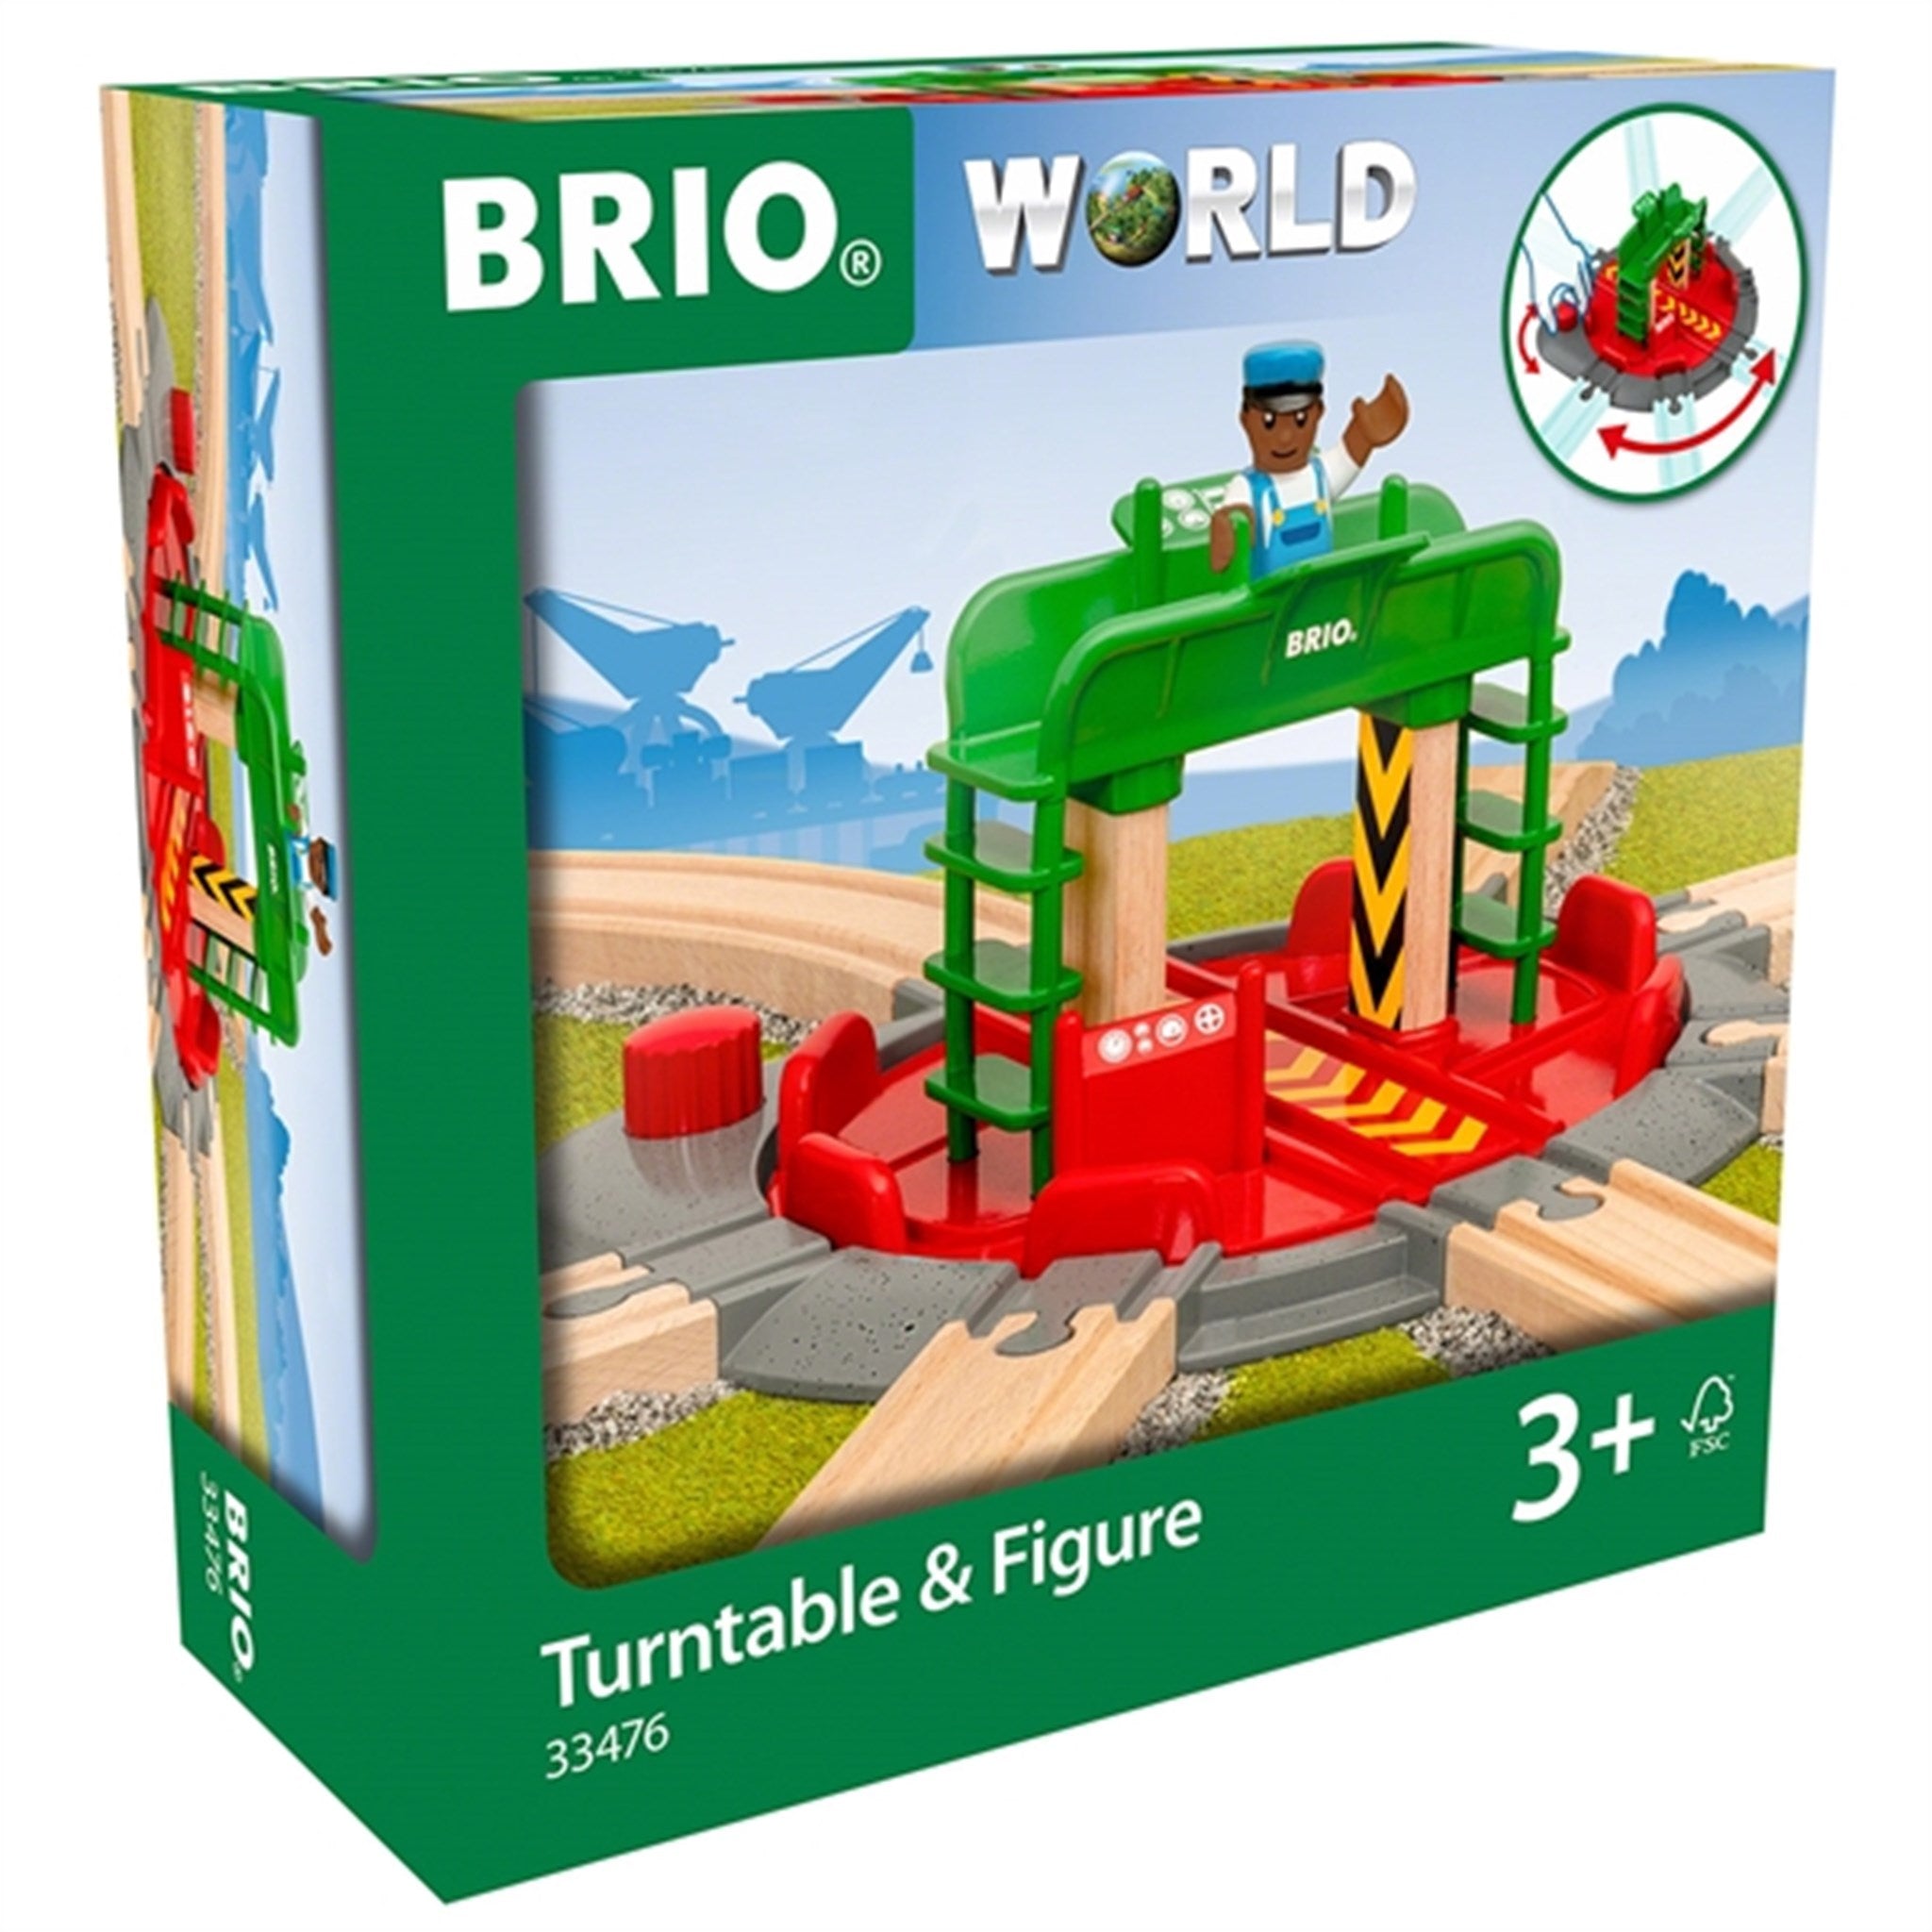 BRIO® Turntable & Figure 2